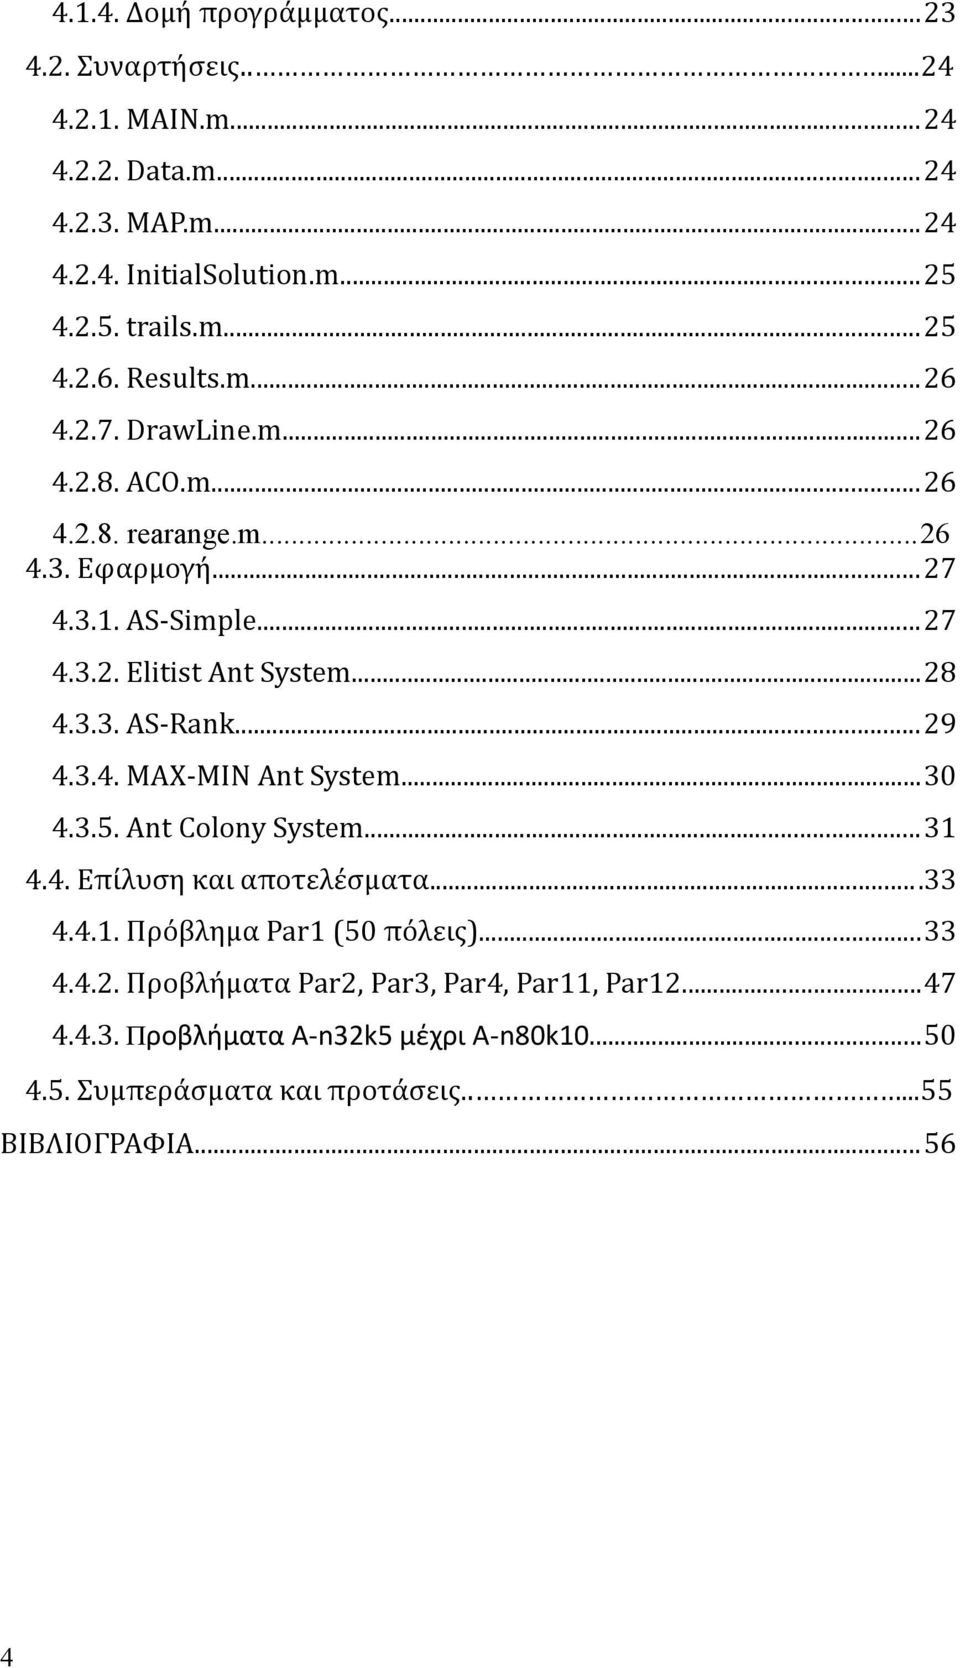 ..29 4.3.4. MAX-MIN Ant System...30 4.3.5. Ant Colony System...31 4.4. Επίλυση και αποτελέσματα...33 4.4.1. Πρόβλημα Par1 (50 πόλεις)...33 4.4.2. Προβλήματα Par2, Par3, Par4, Par11, Par12.